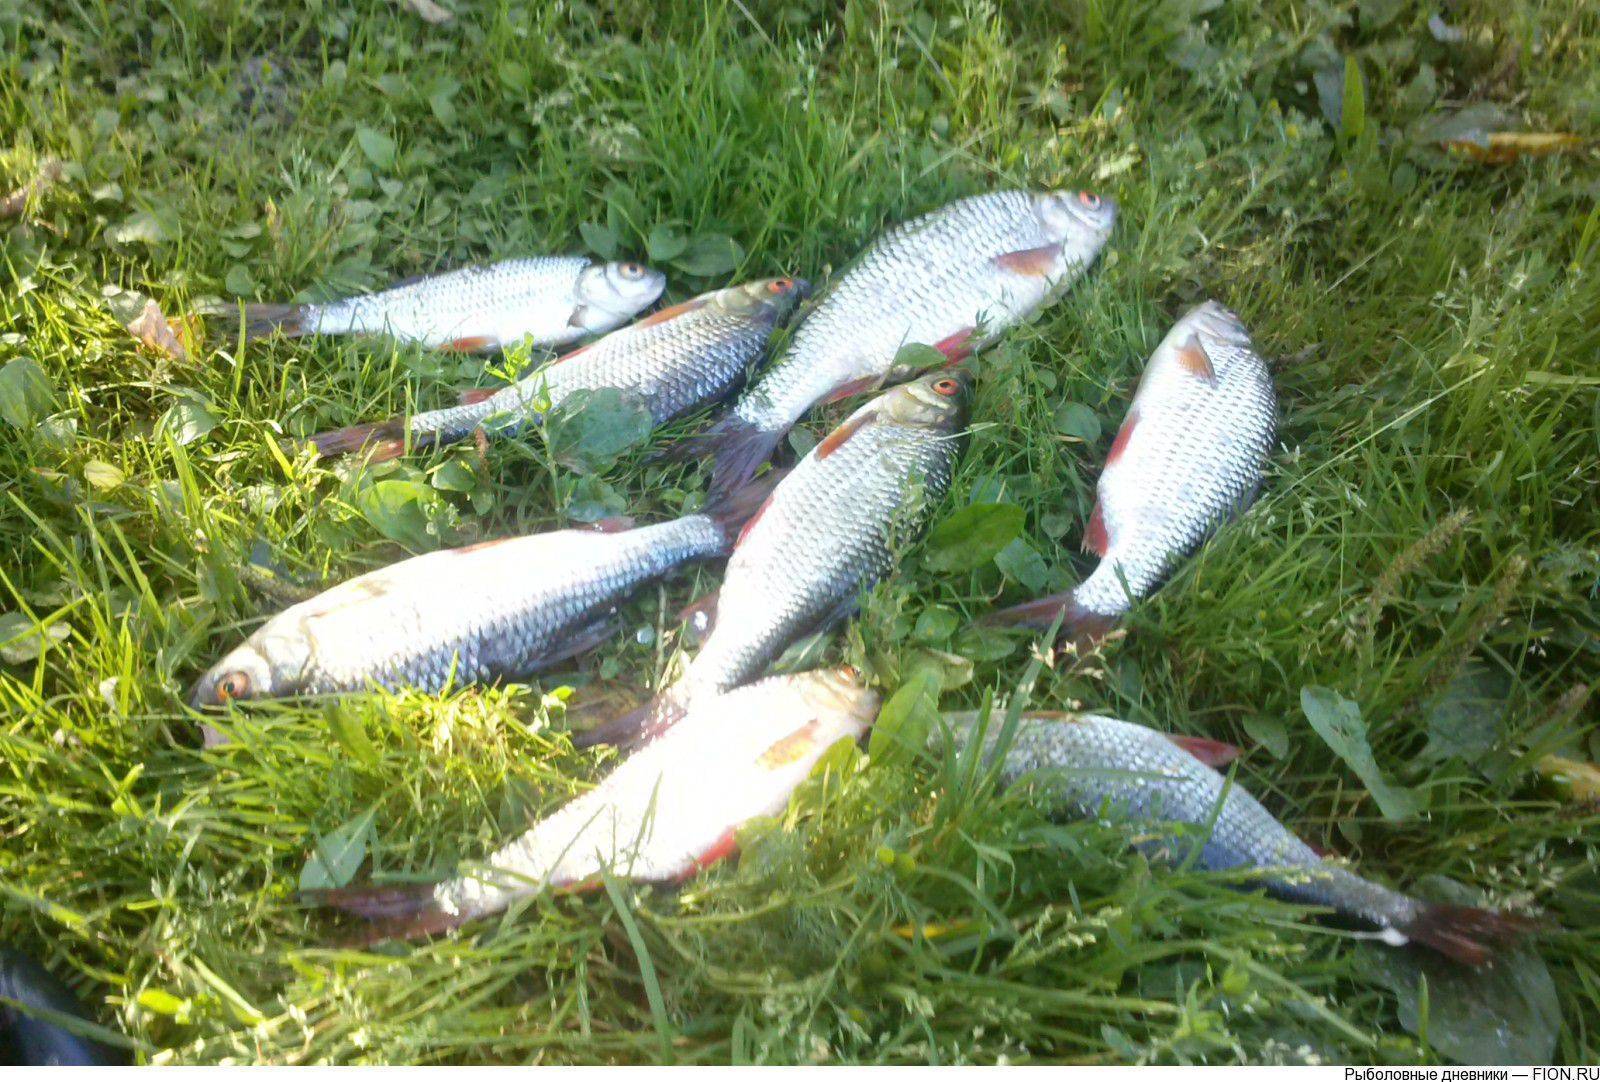 Платная рыбалка на озере сенеже в подмосковье: отчеты, отзывы о рыбалке на рыбхозе